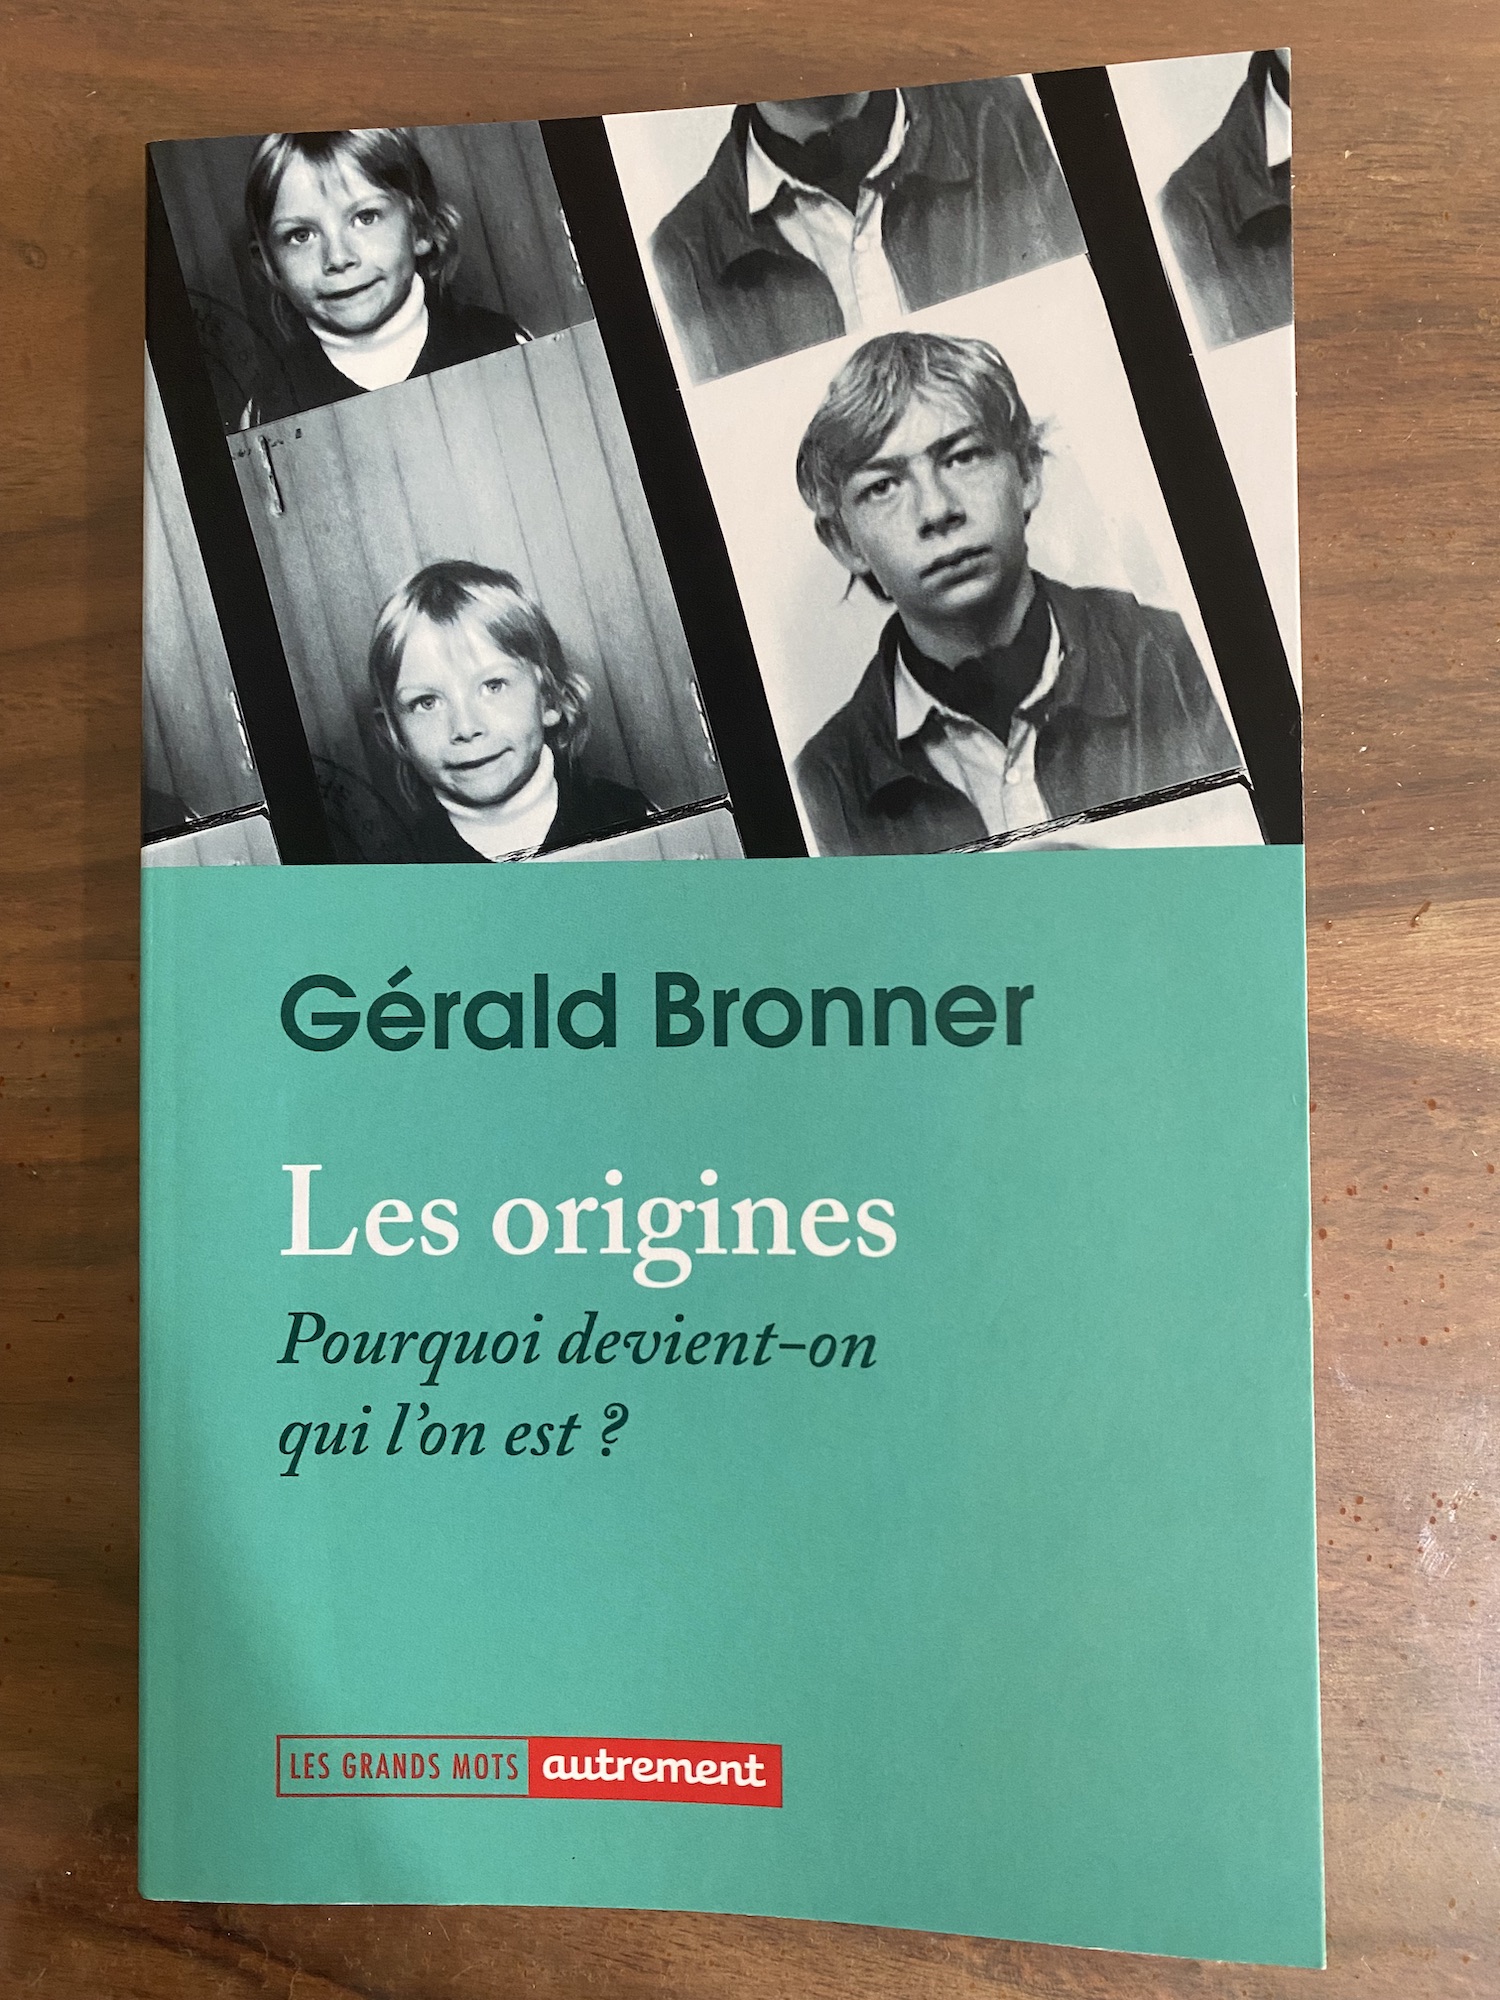 image from Les Origines, “Pourquoi devient-on qui l'on est ?” par Gérald Bronner